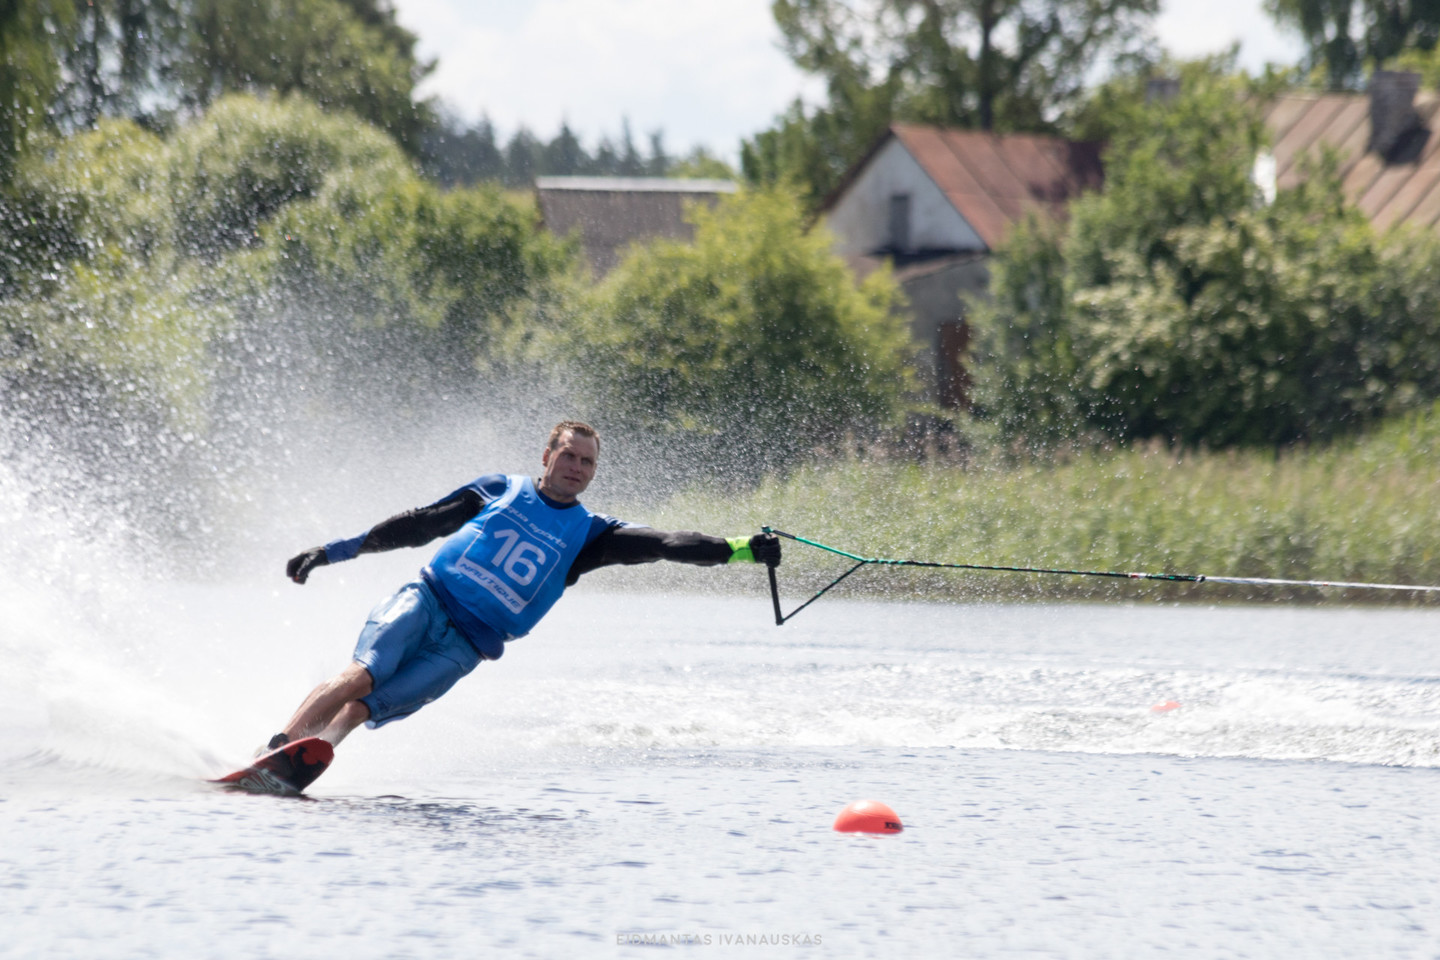 Lietuvoje pirmą kartą surengtų Tarptautinės vandens slidinėjimo federacijos standartus oficialiai atitinkančių varžybų dalyviai namo išsivežė ir medalius, ir rekordus, ir gerus įspūdžius. <br> E.Ivanausko nuotr.